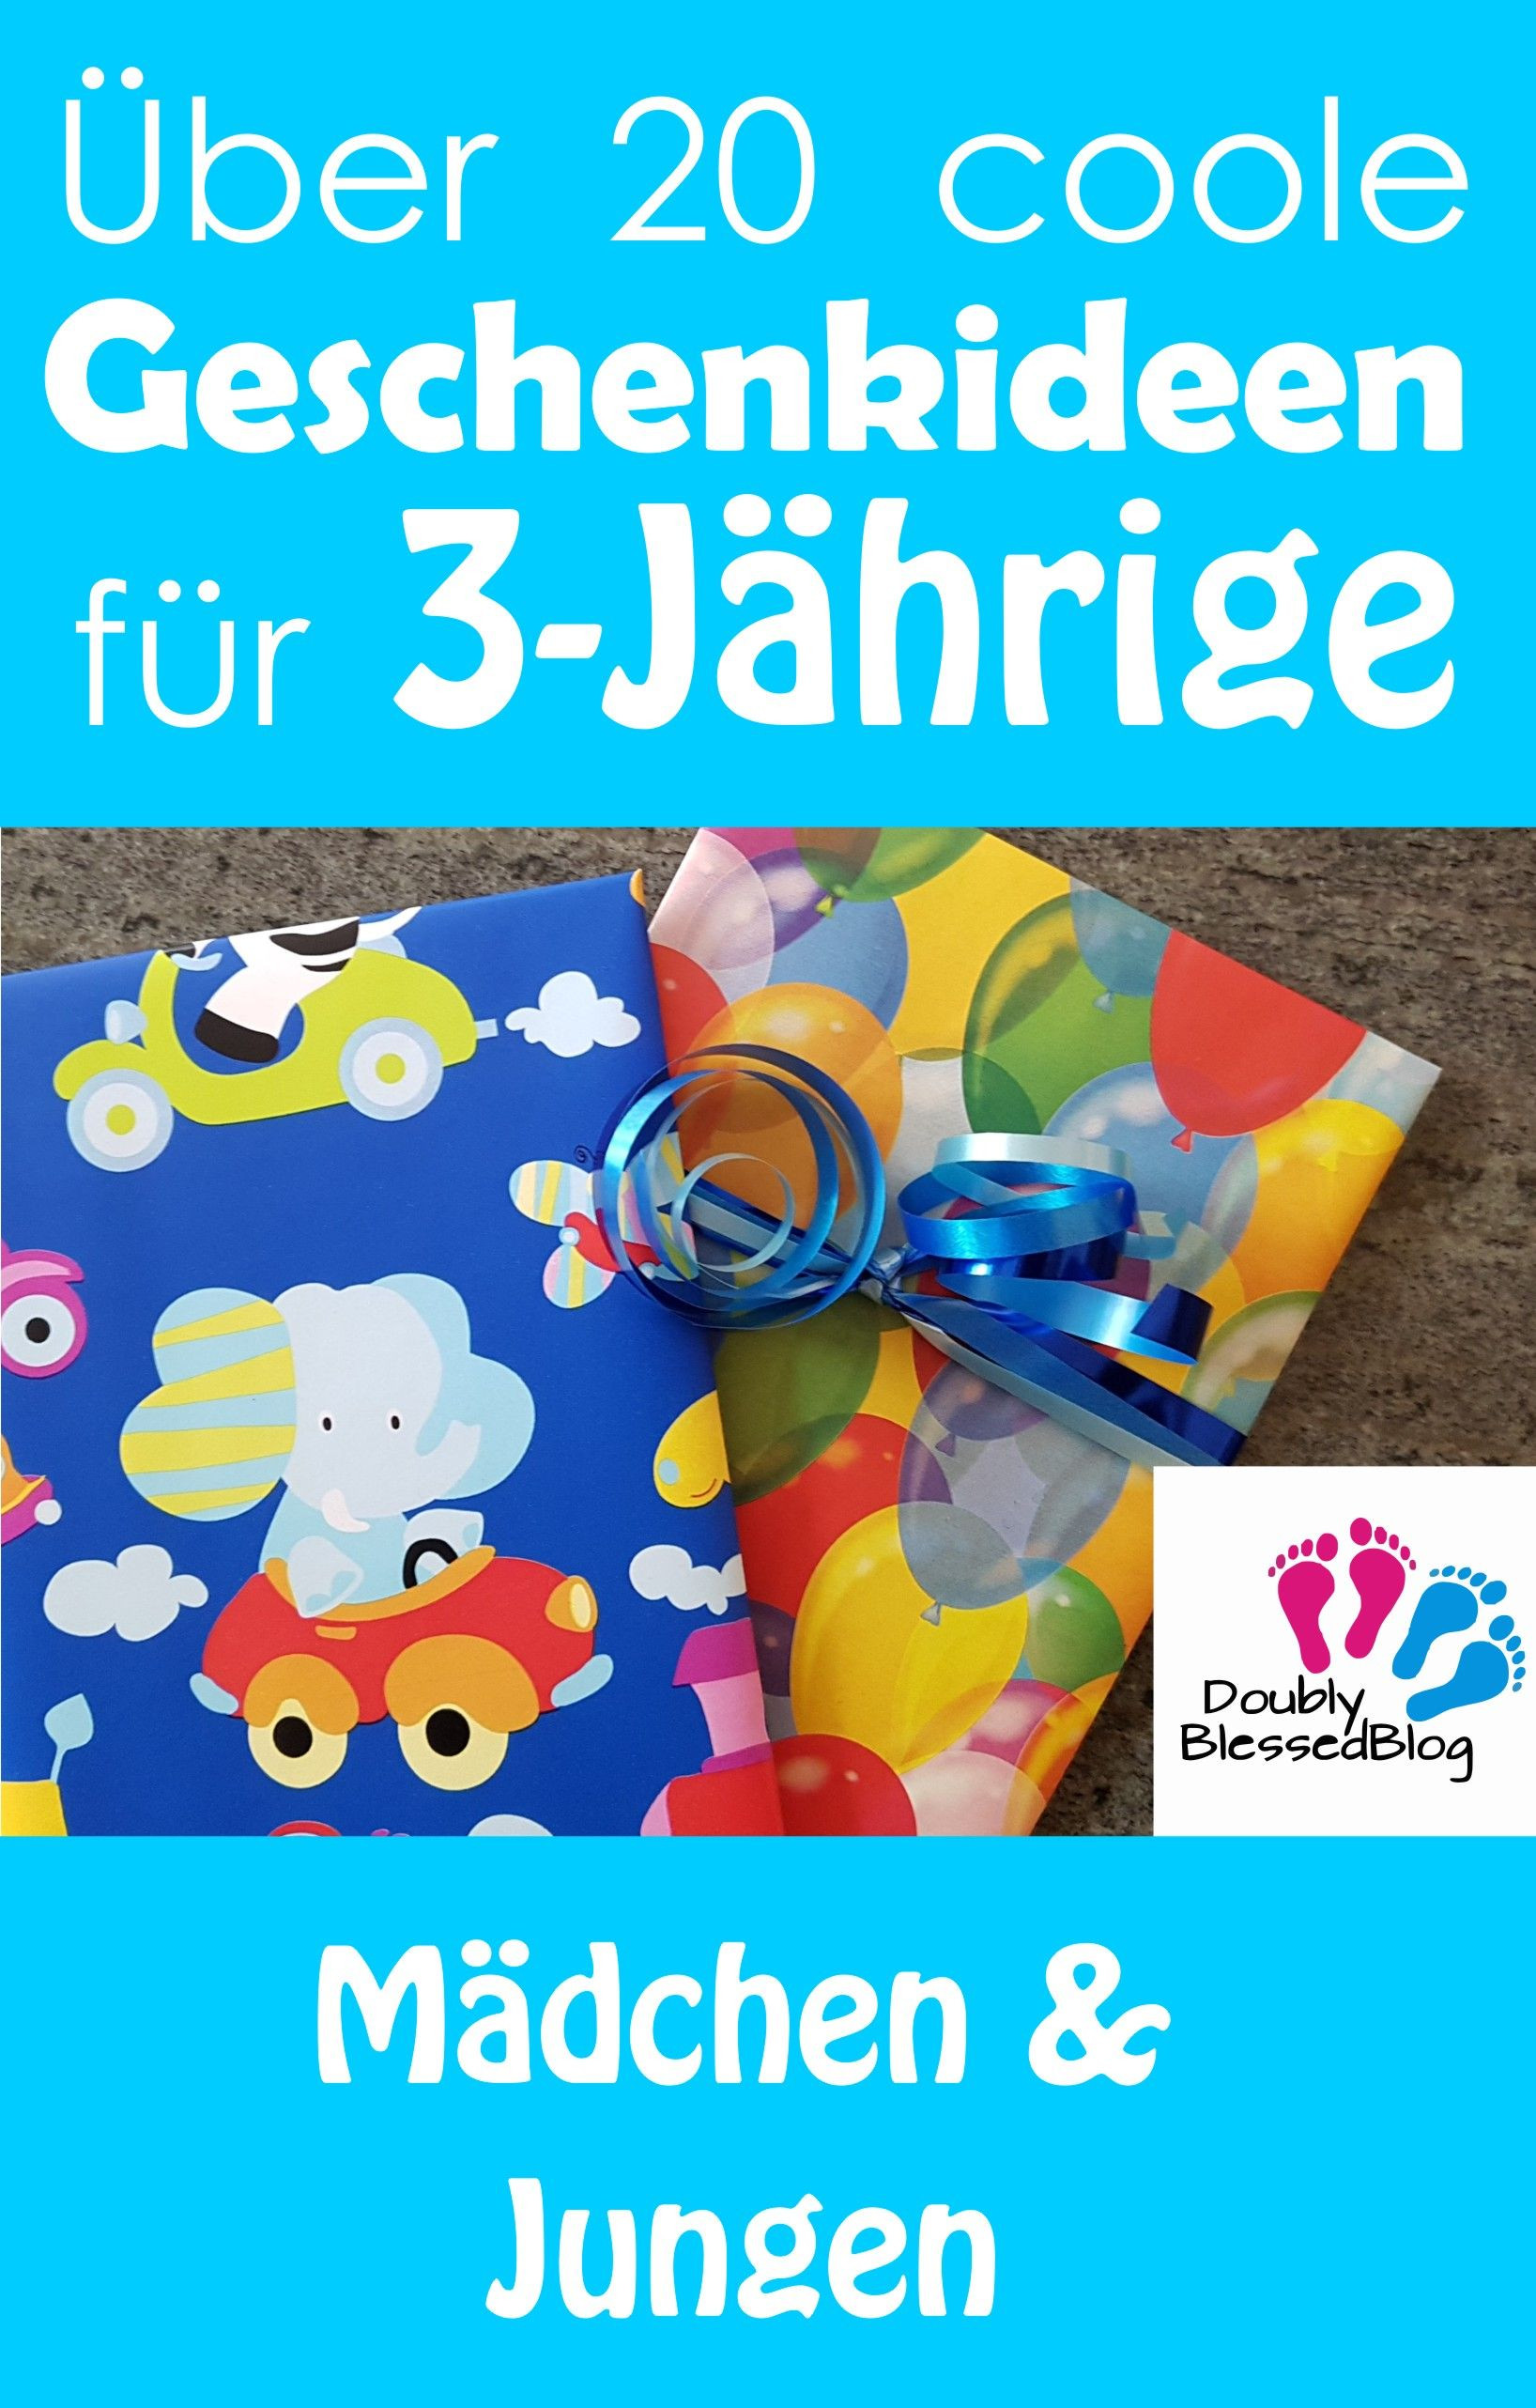 Geschenkideen Kleinkinder
 Geschenkideen für 3 jährige Mädchen und Jungen